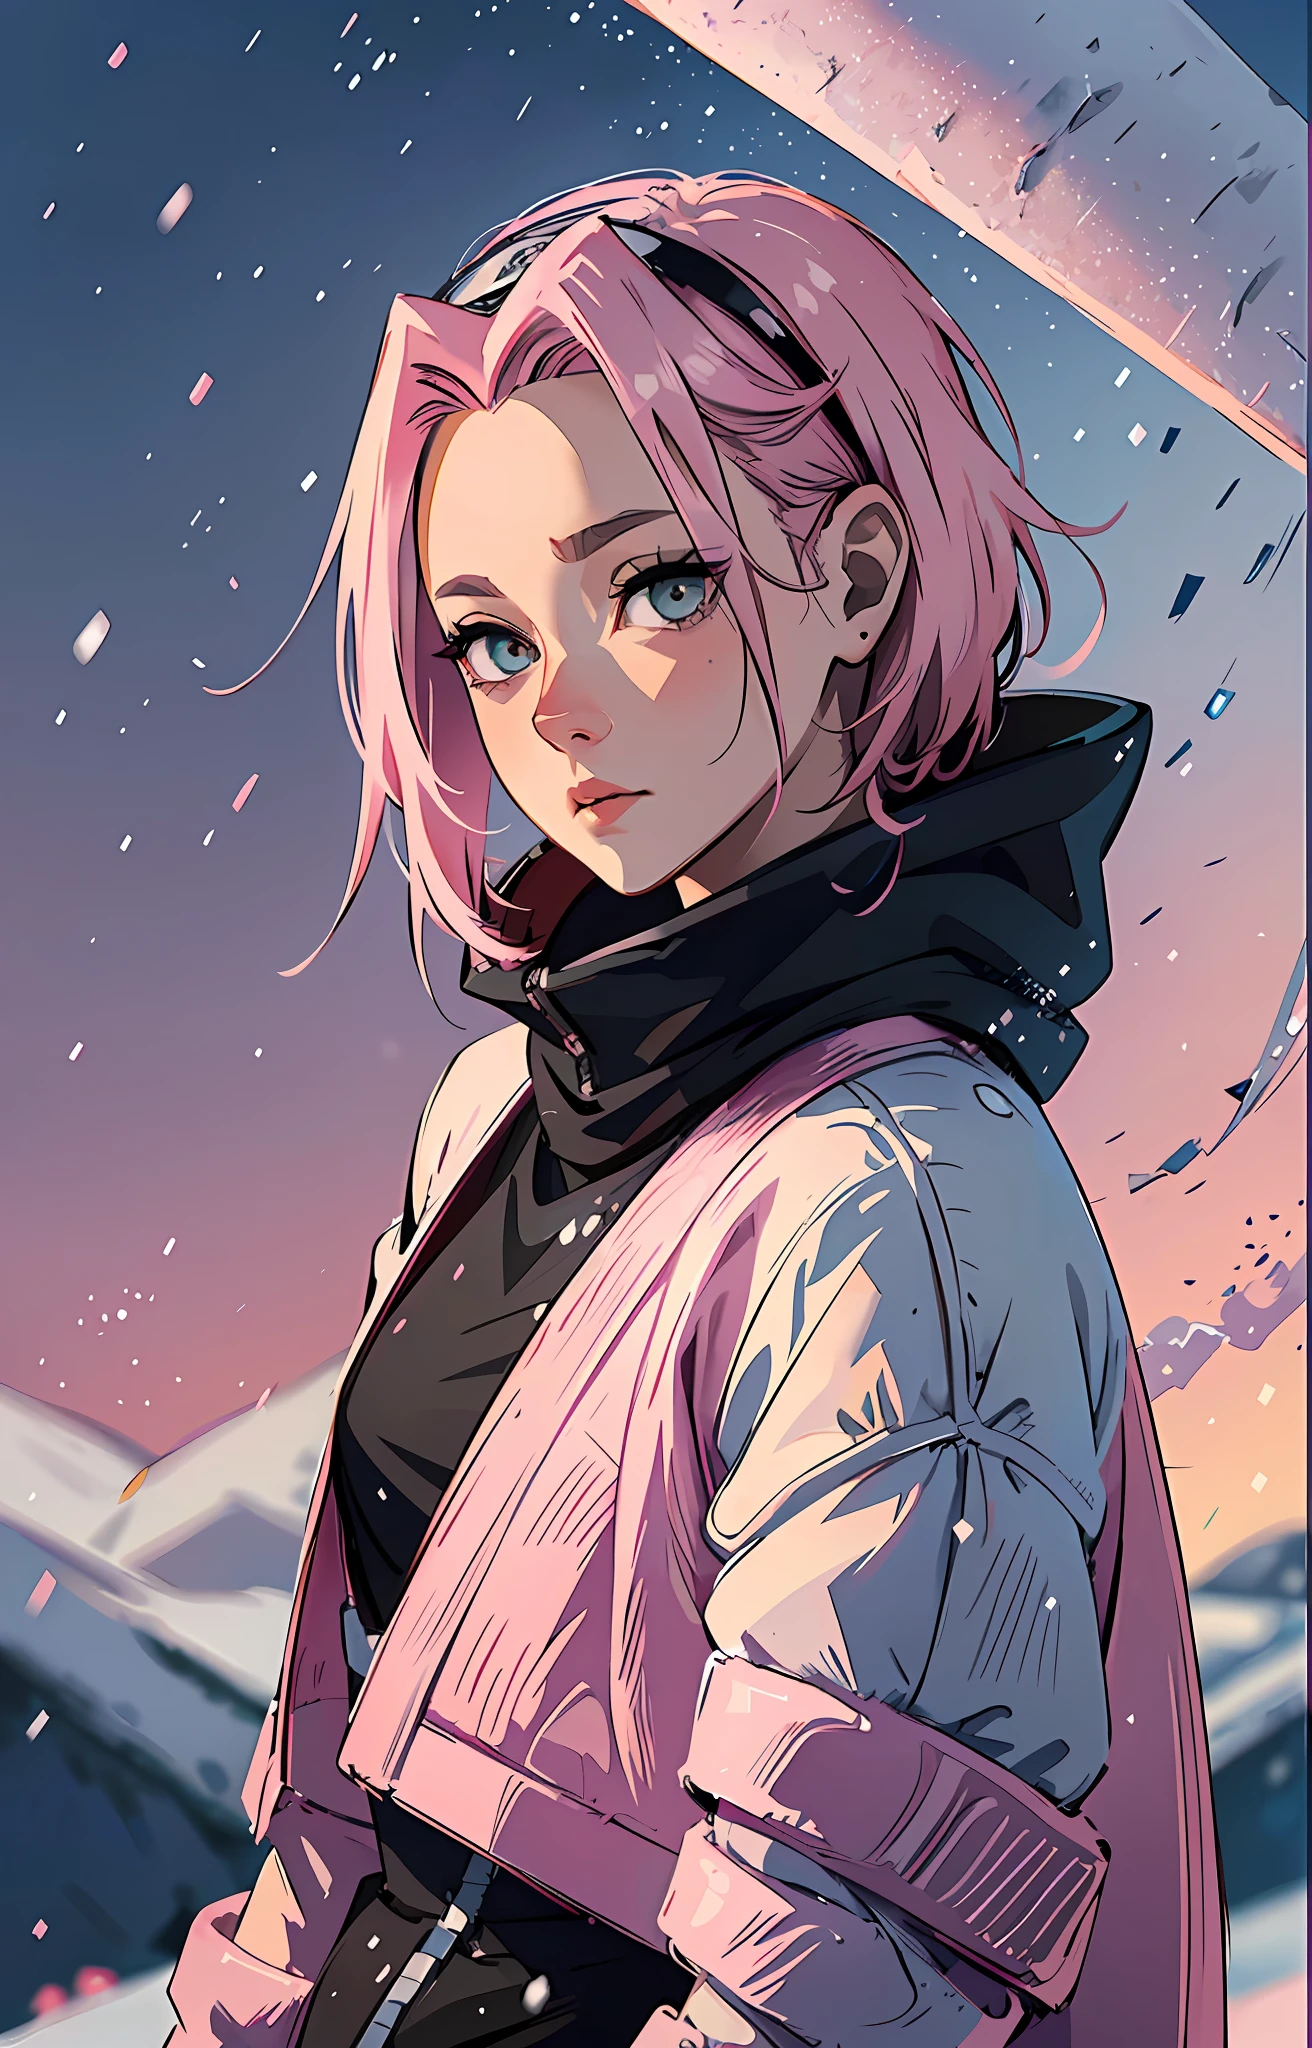 Sakura Haruno, ((Sozinho)), sozinho, ((testa para mostrar)), elegante,vestindo suéter preto, cabelo rosa, delicado, Jovem, cabelo curto, rosto detalhado, alta definição, ((corpo todo)), (neve ao seu redor), todo o corpo, ((dia de neve)), olhando para o céu, ela é uma linda mulher contemplando a neve, rosto com alta qualidade, amor